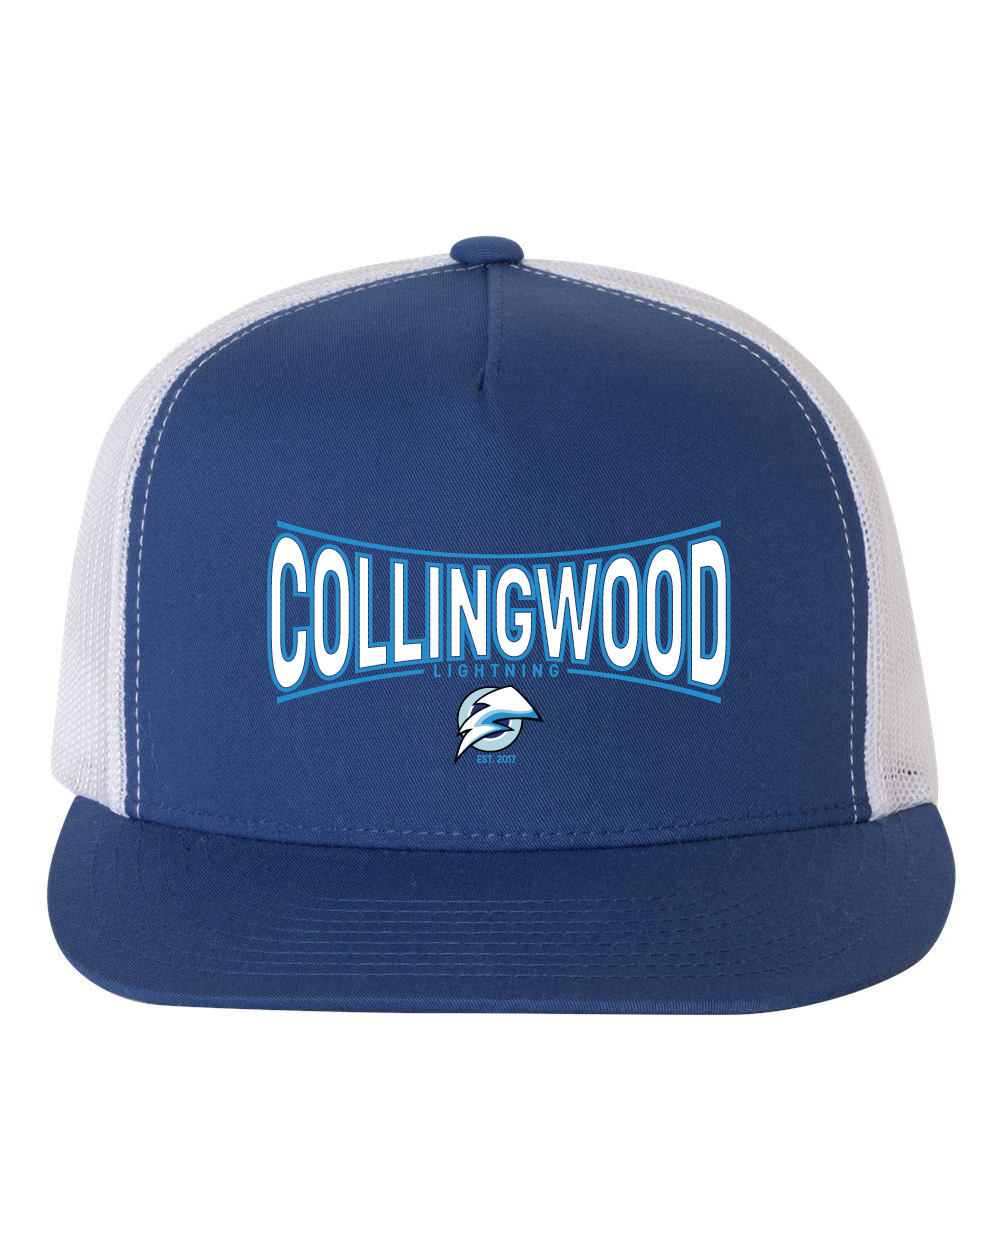 Collingwood Lightning 2.0 Hat